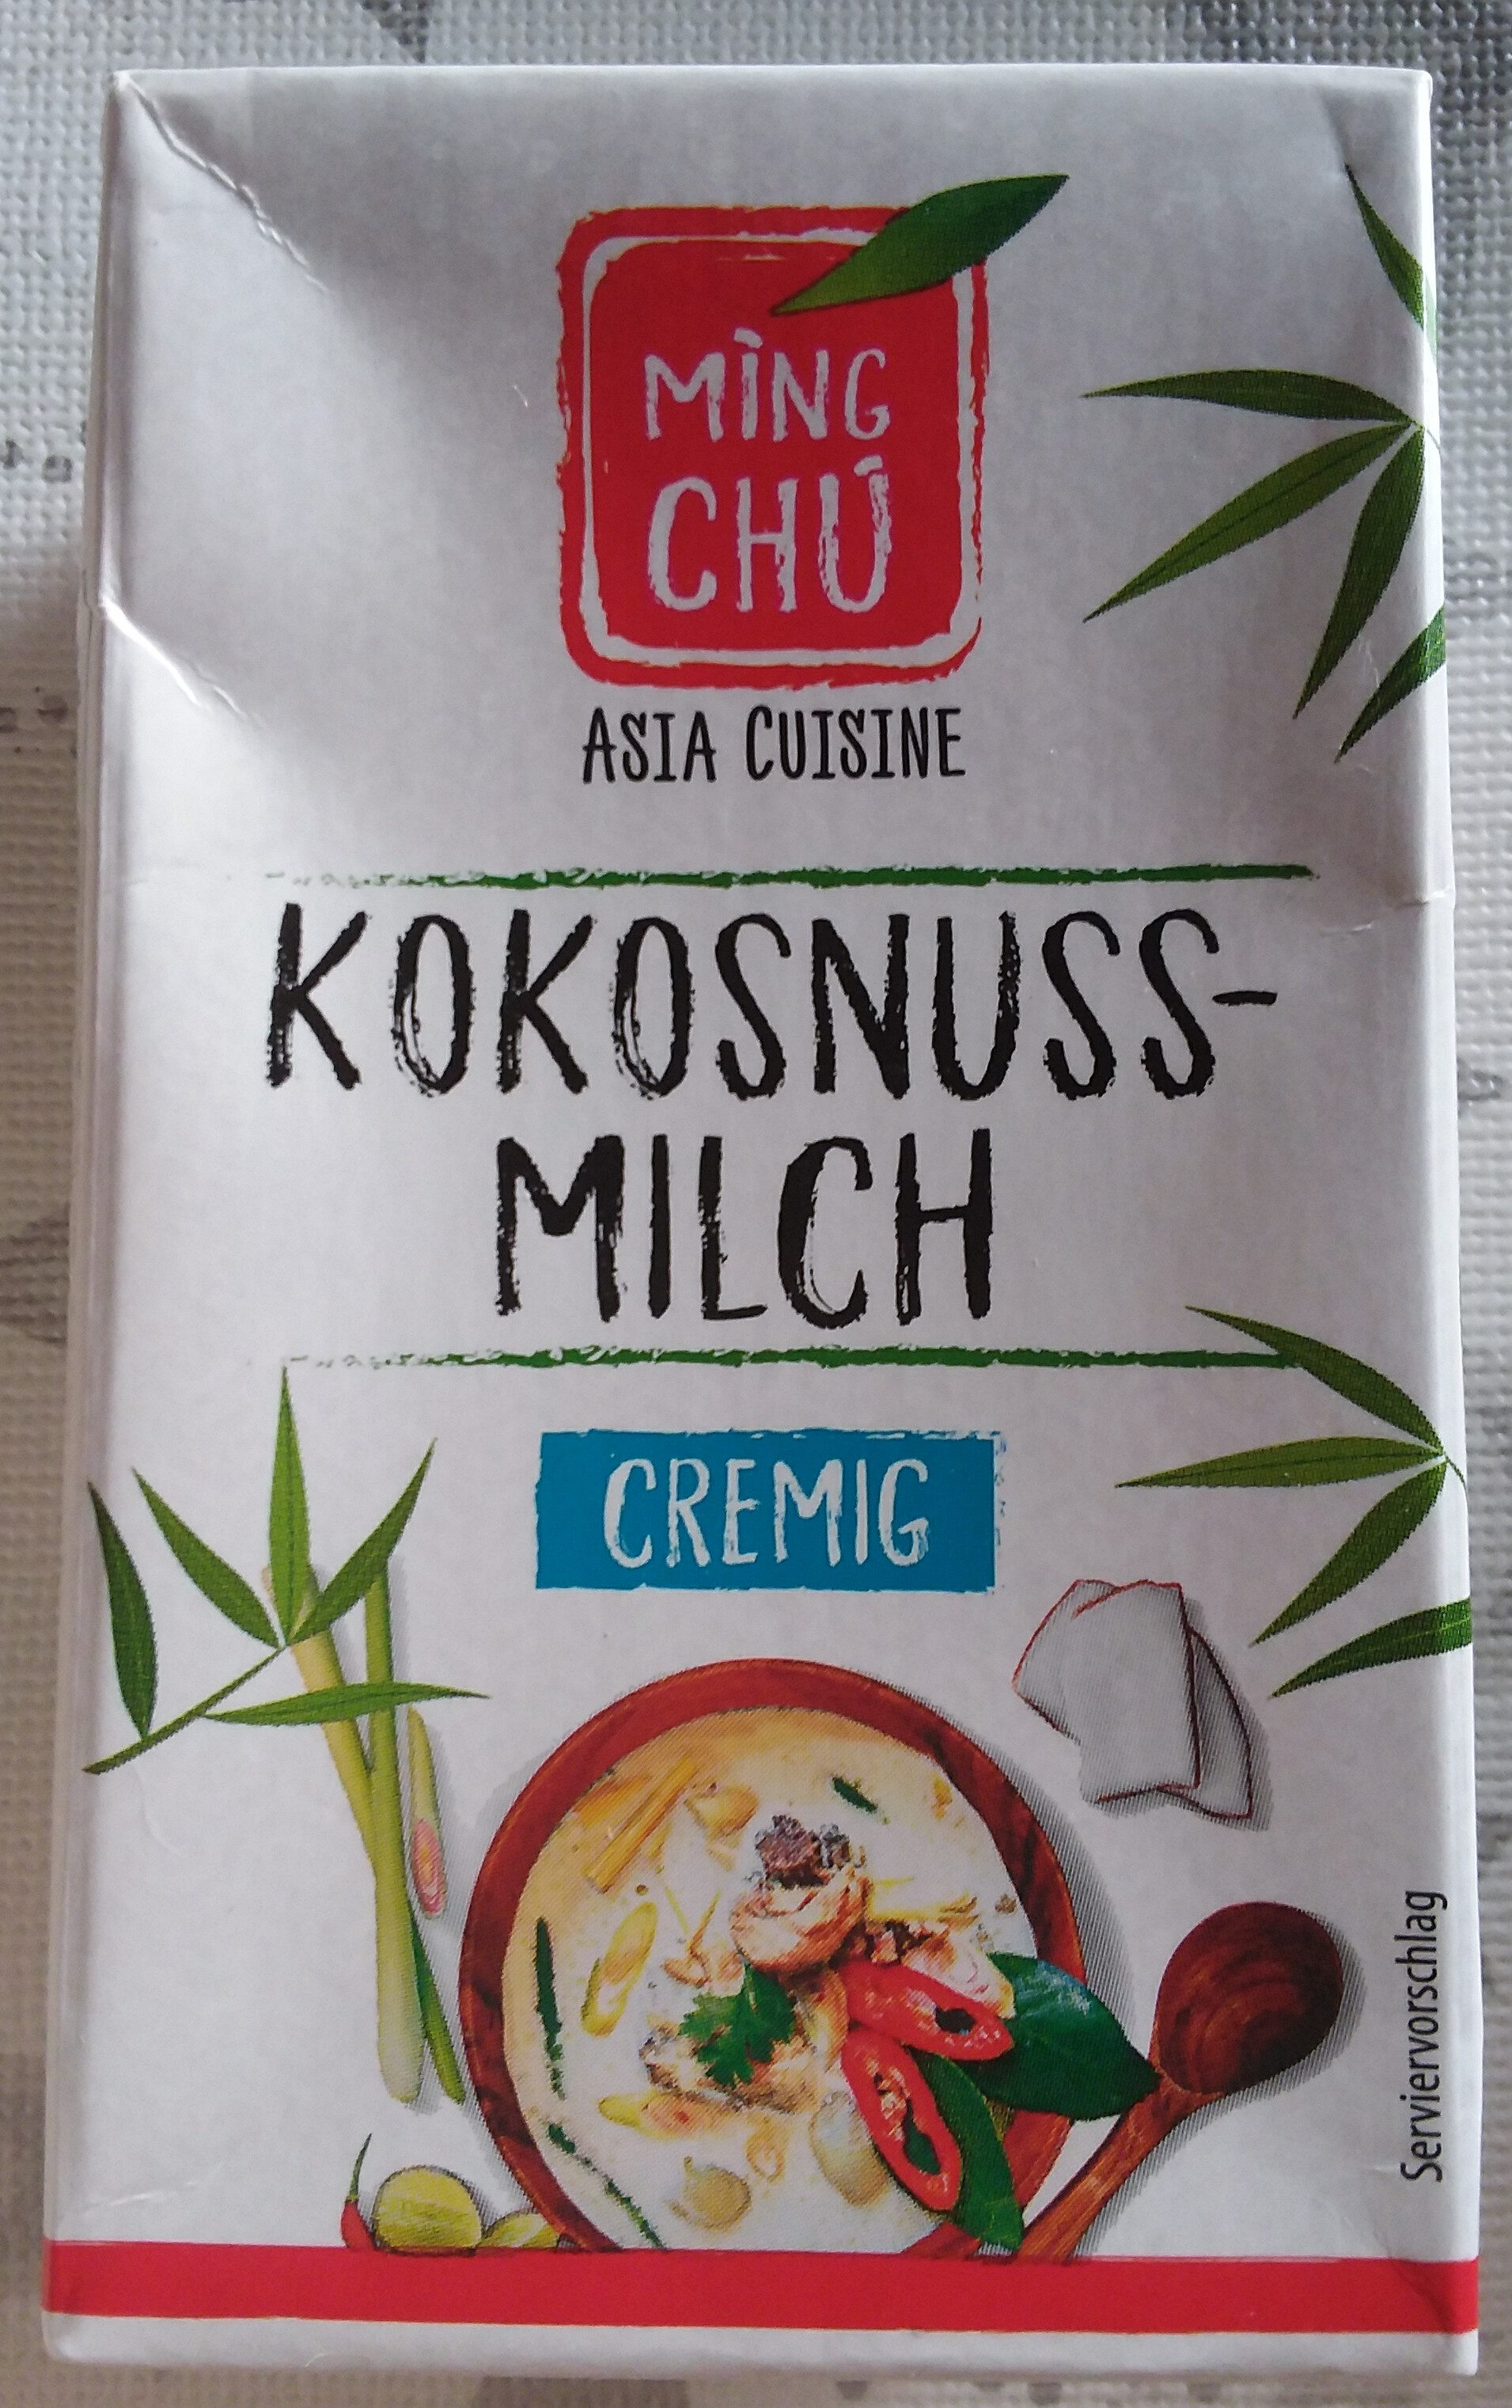 Kokosnuss-Milch cremig - Produkt